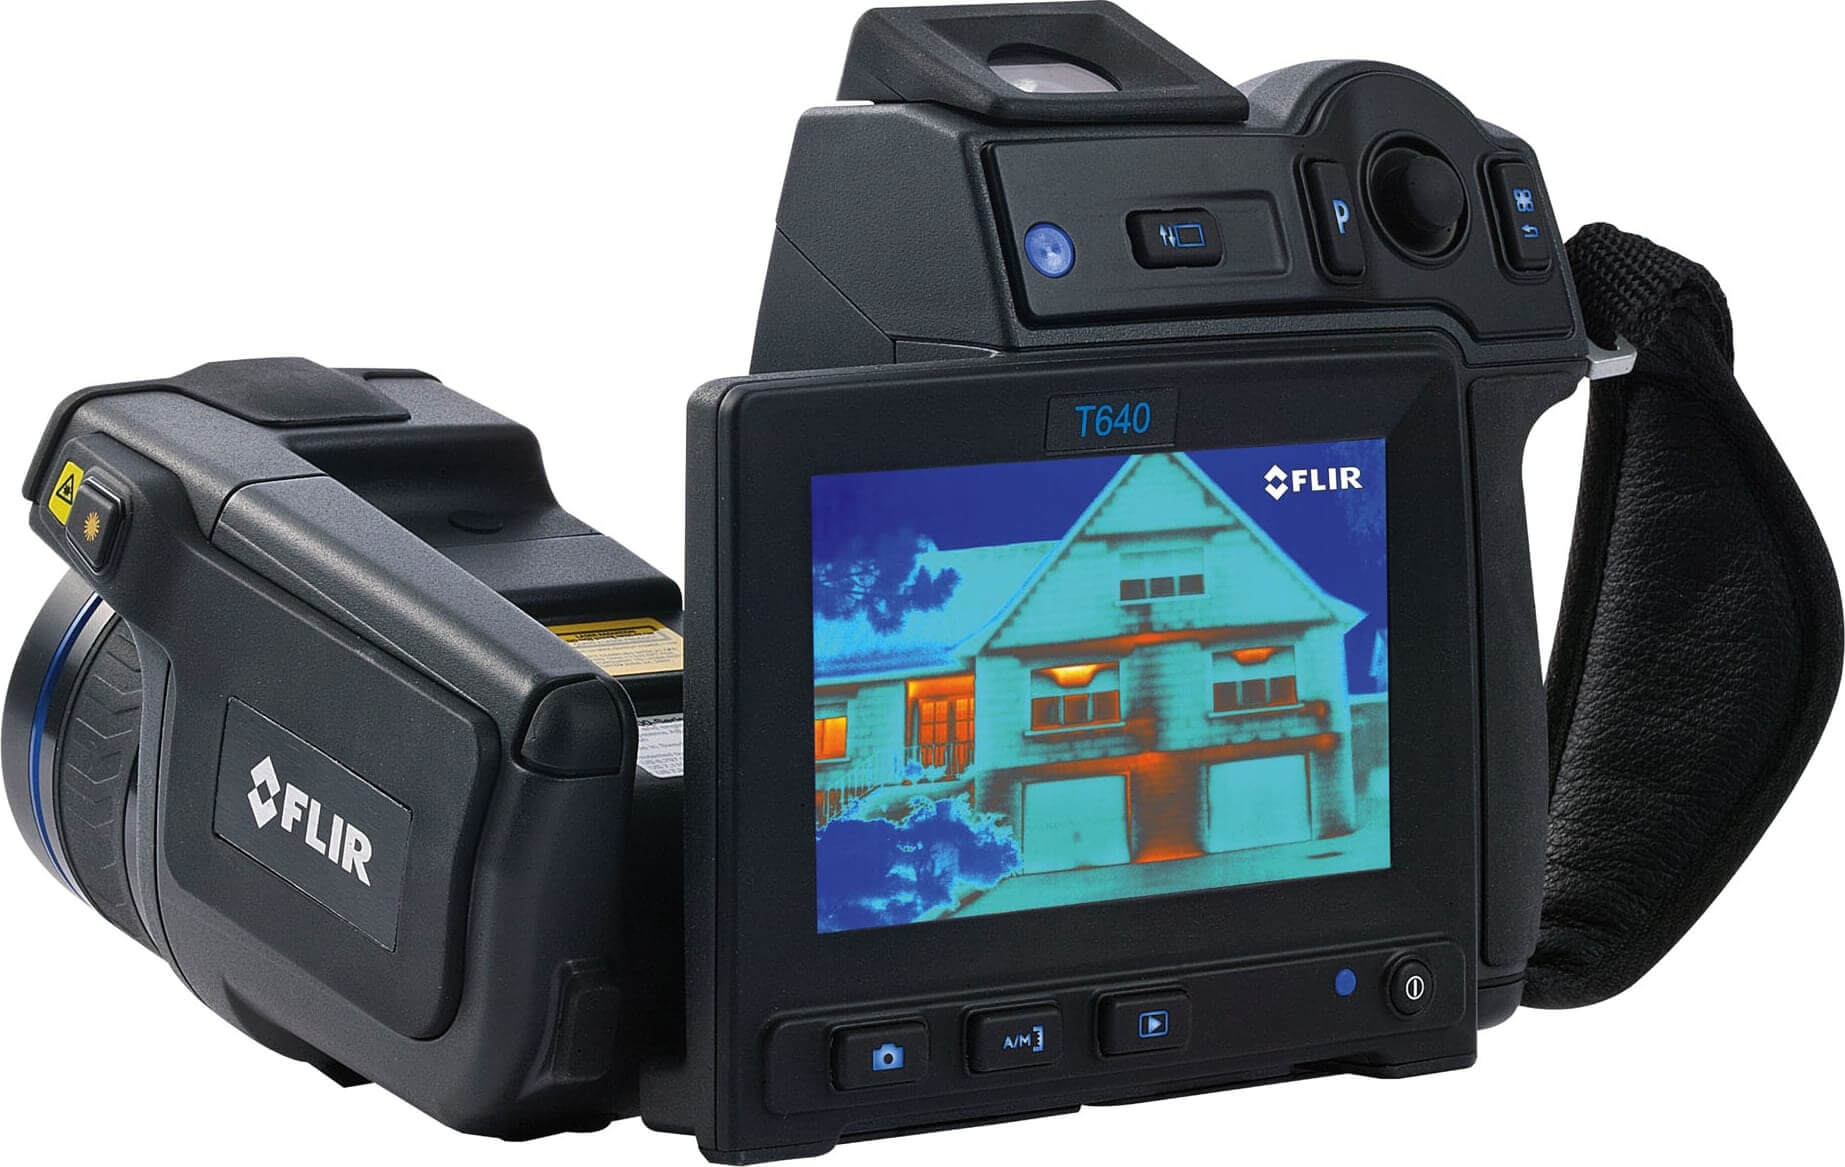 Flir T640 45 Thermal Imaging Infrared Camera 640 X 480 In Thermal Imaging Report Template